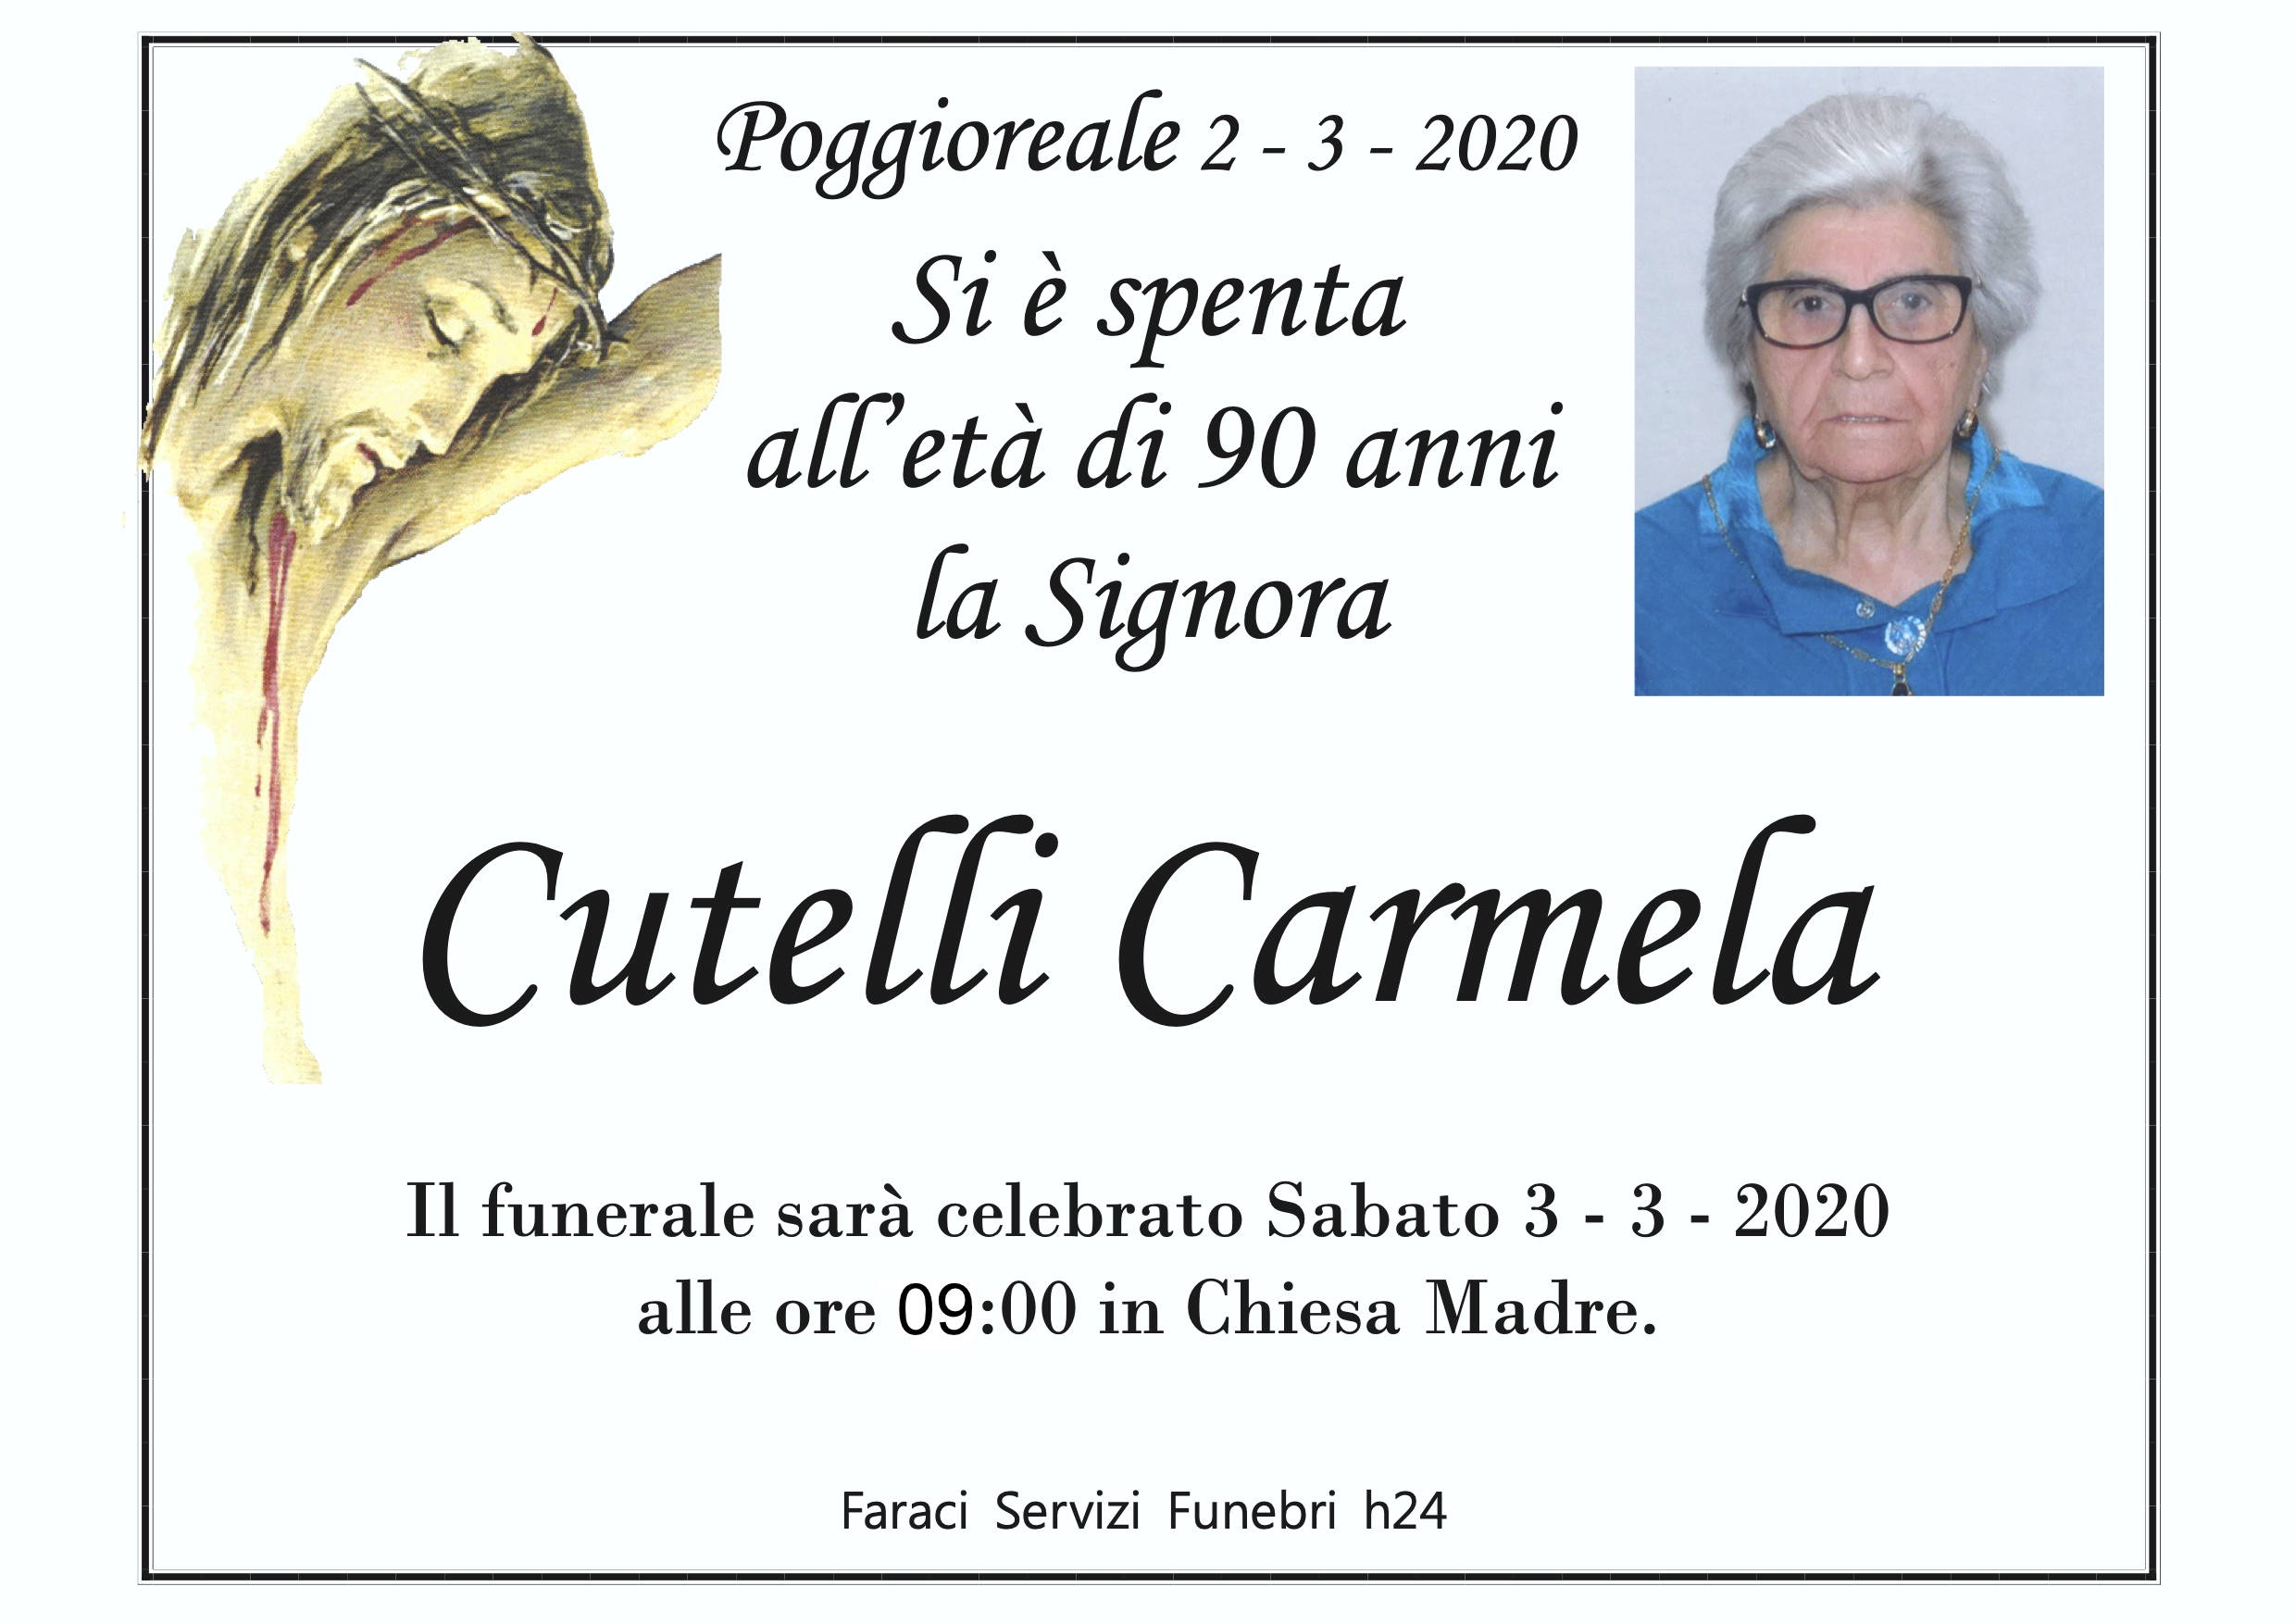 Carmela Cutelli